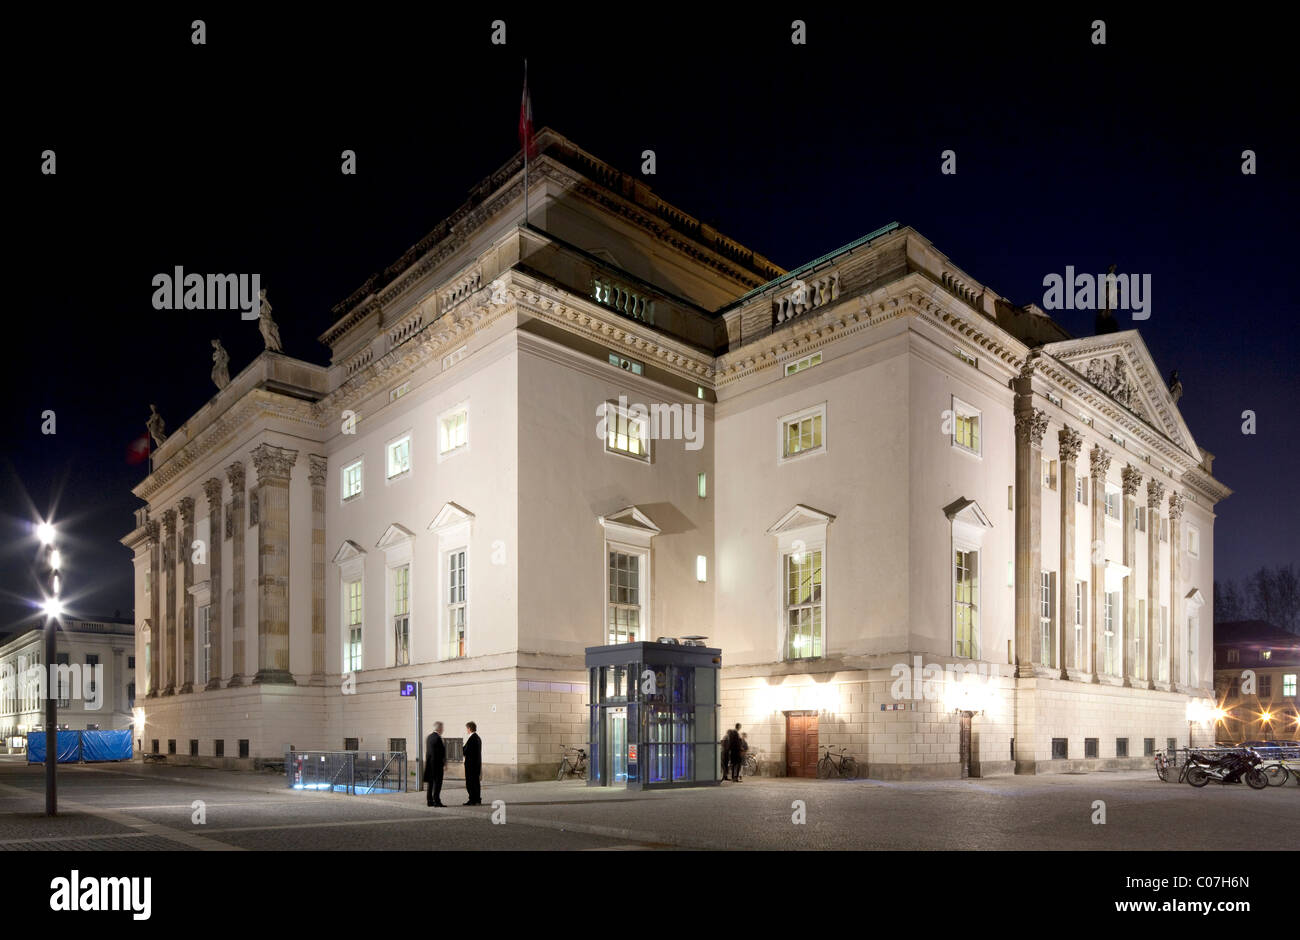 Staatsoper Unter den Linden or Deutsche Staatsoper, German State Opera, Mitte district, Berlin, Germany, Europe Stock Photo